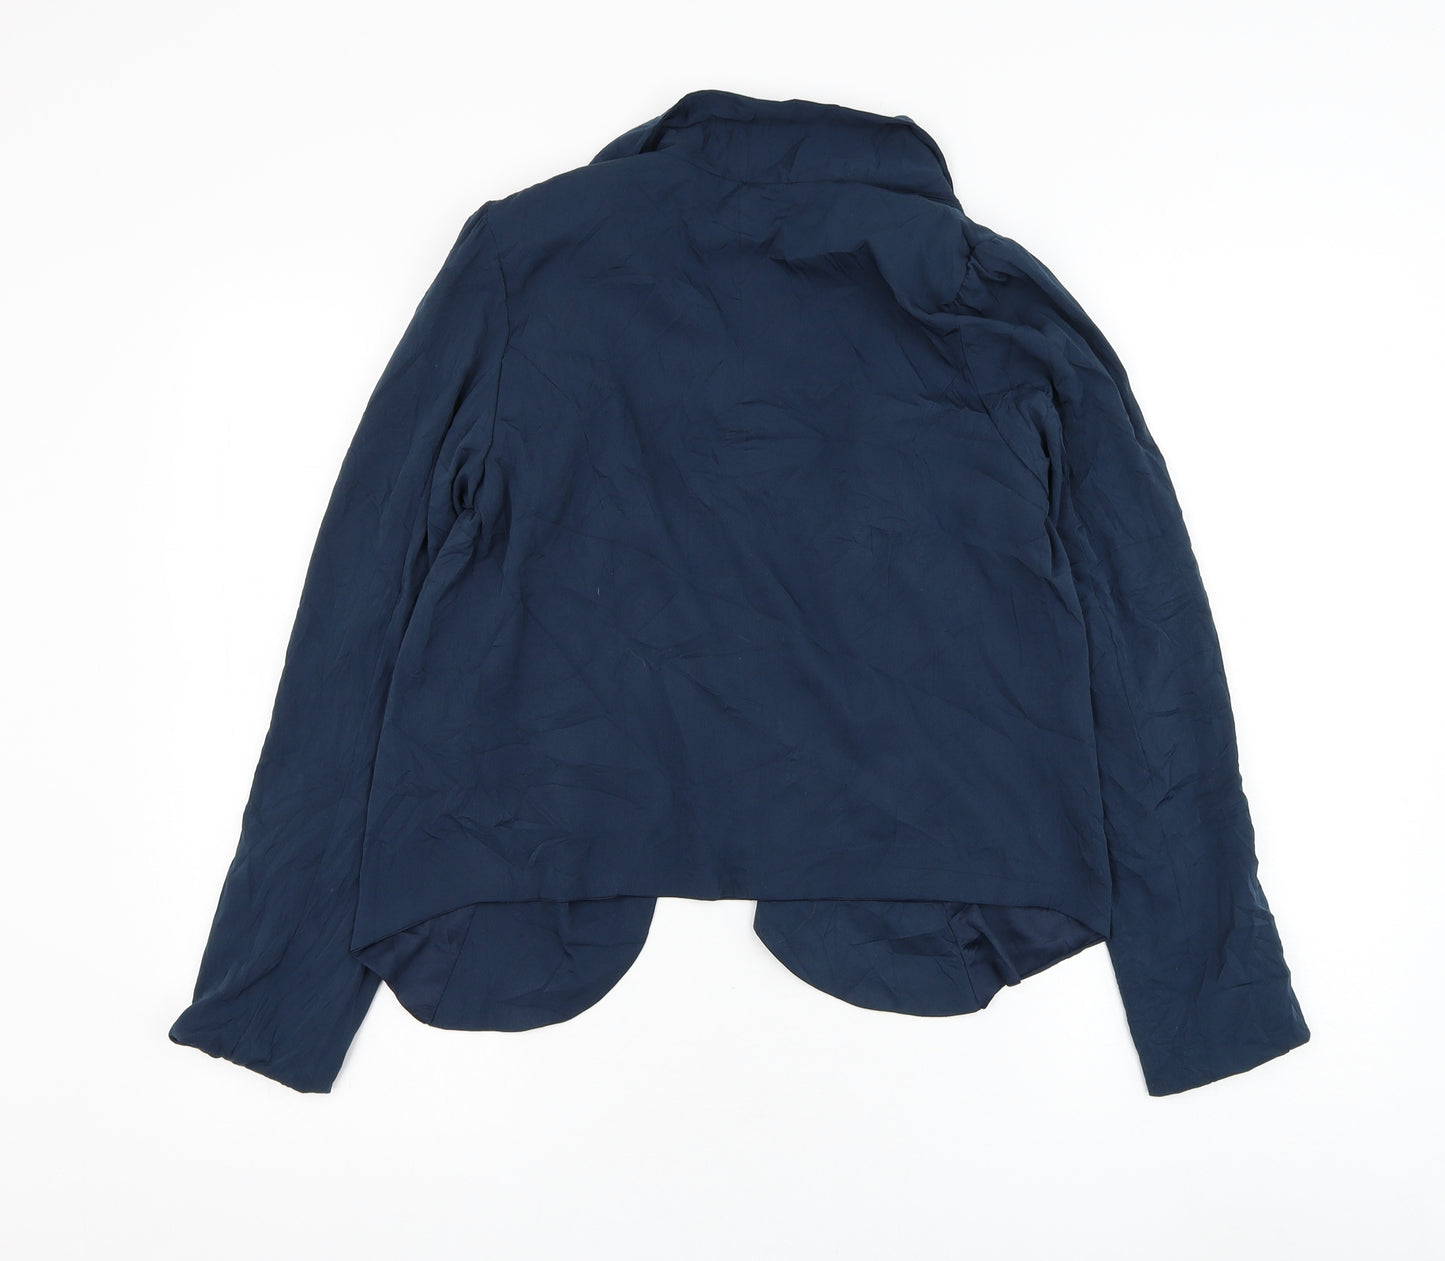 Voulez-Vous Womens Blue Jacket Blazer Size S